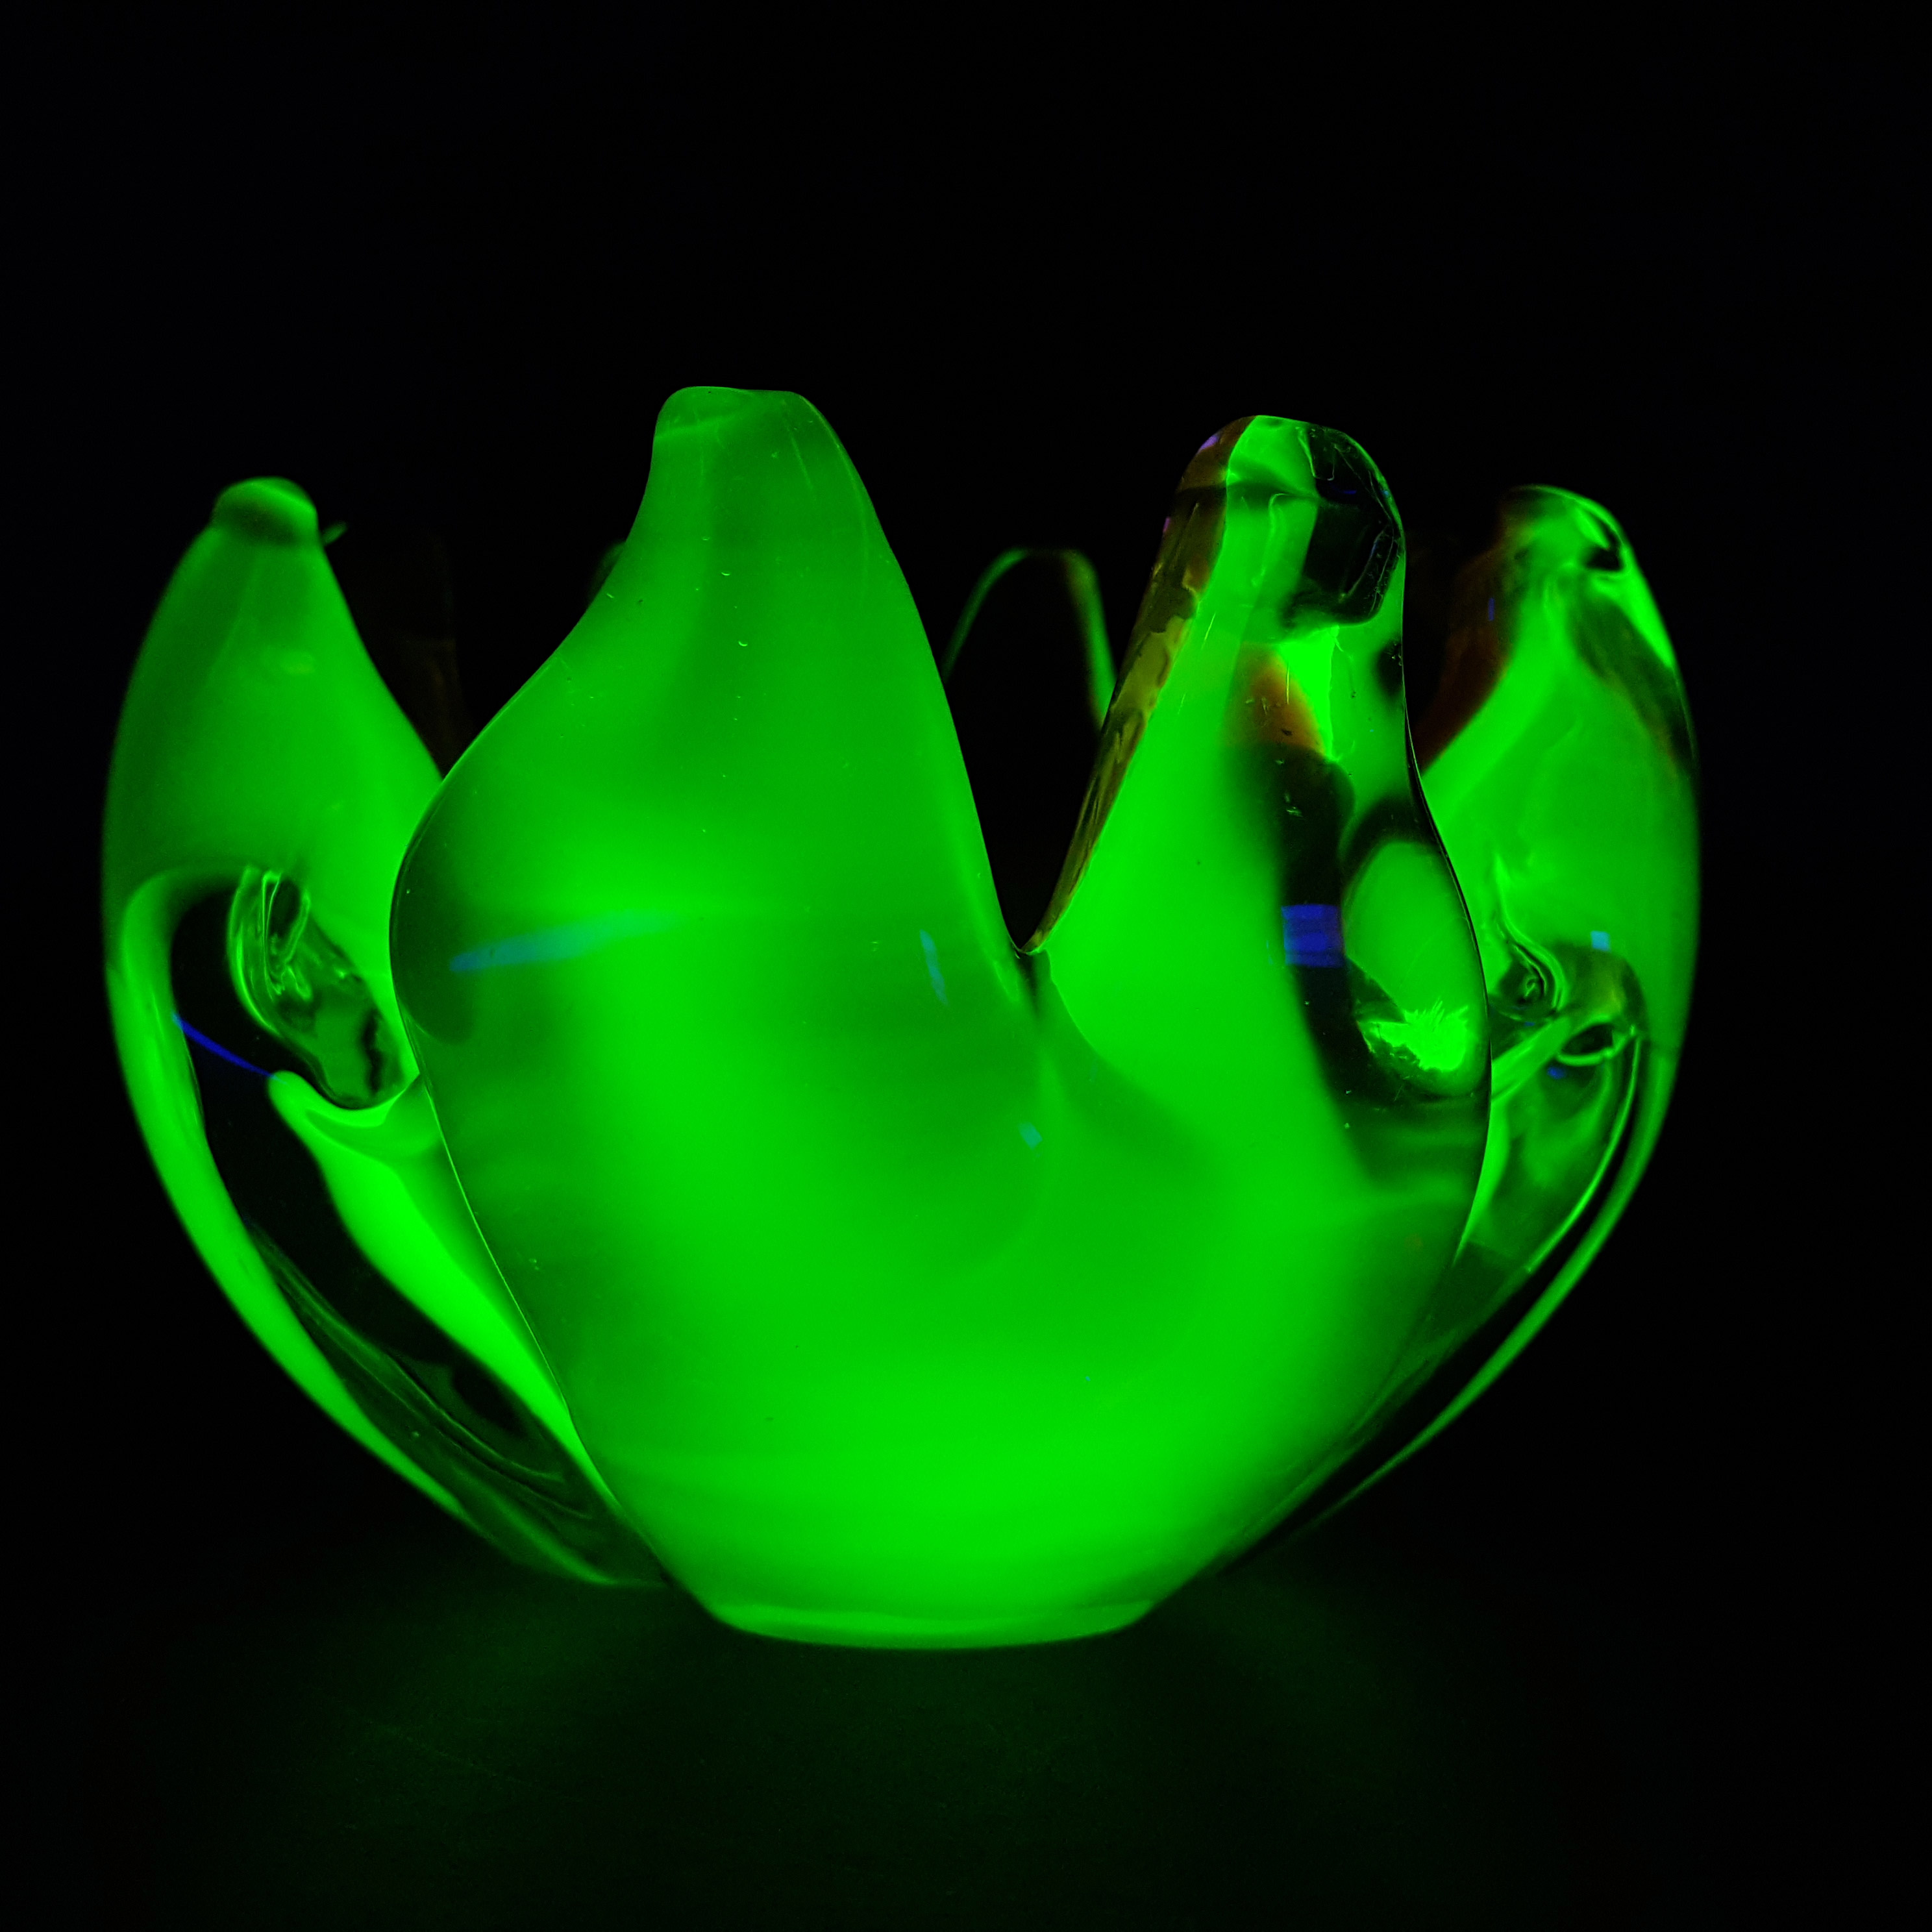 Arte Nuova Pustetto & Zanetti Murano Pink & Uranium Sommerso Glass Bowl - Click Image to Close